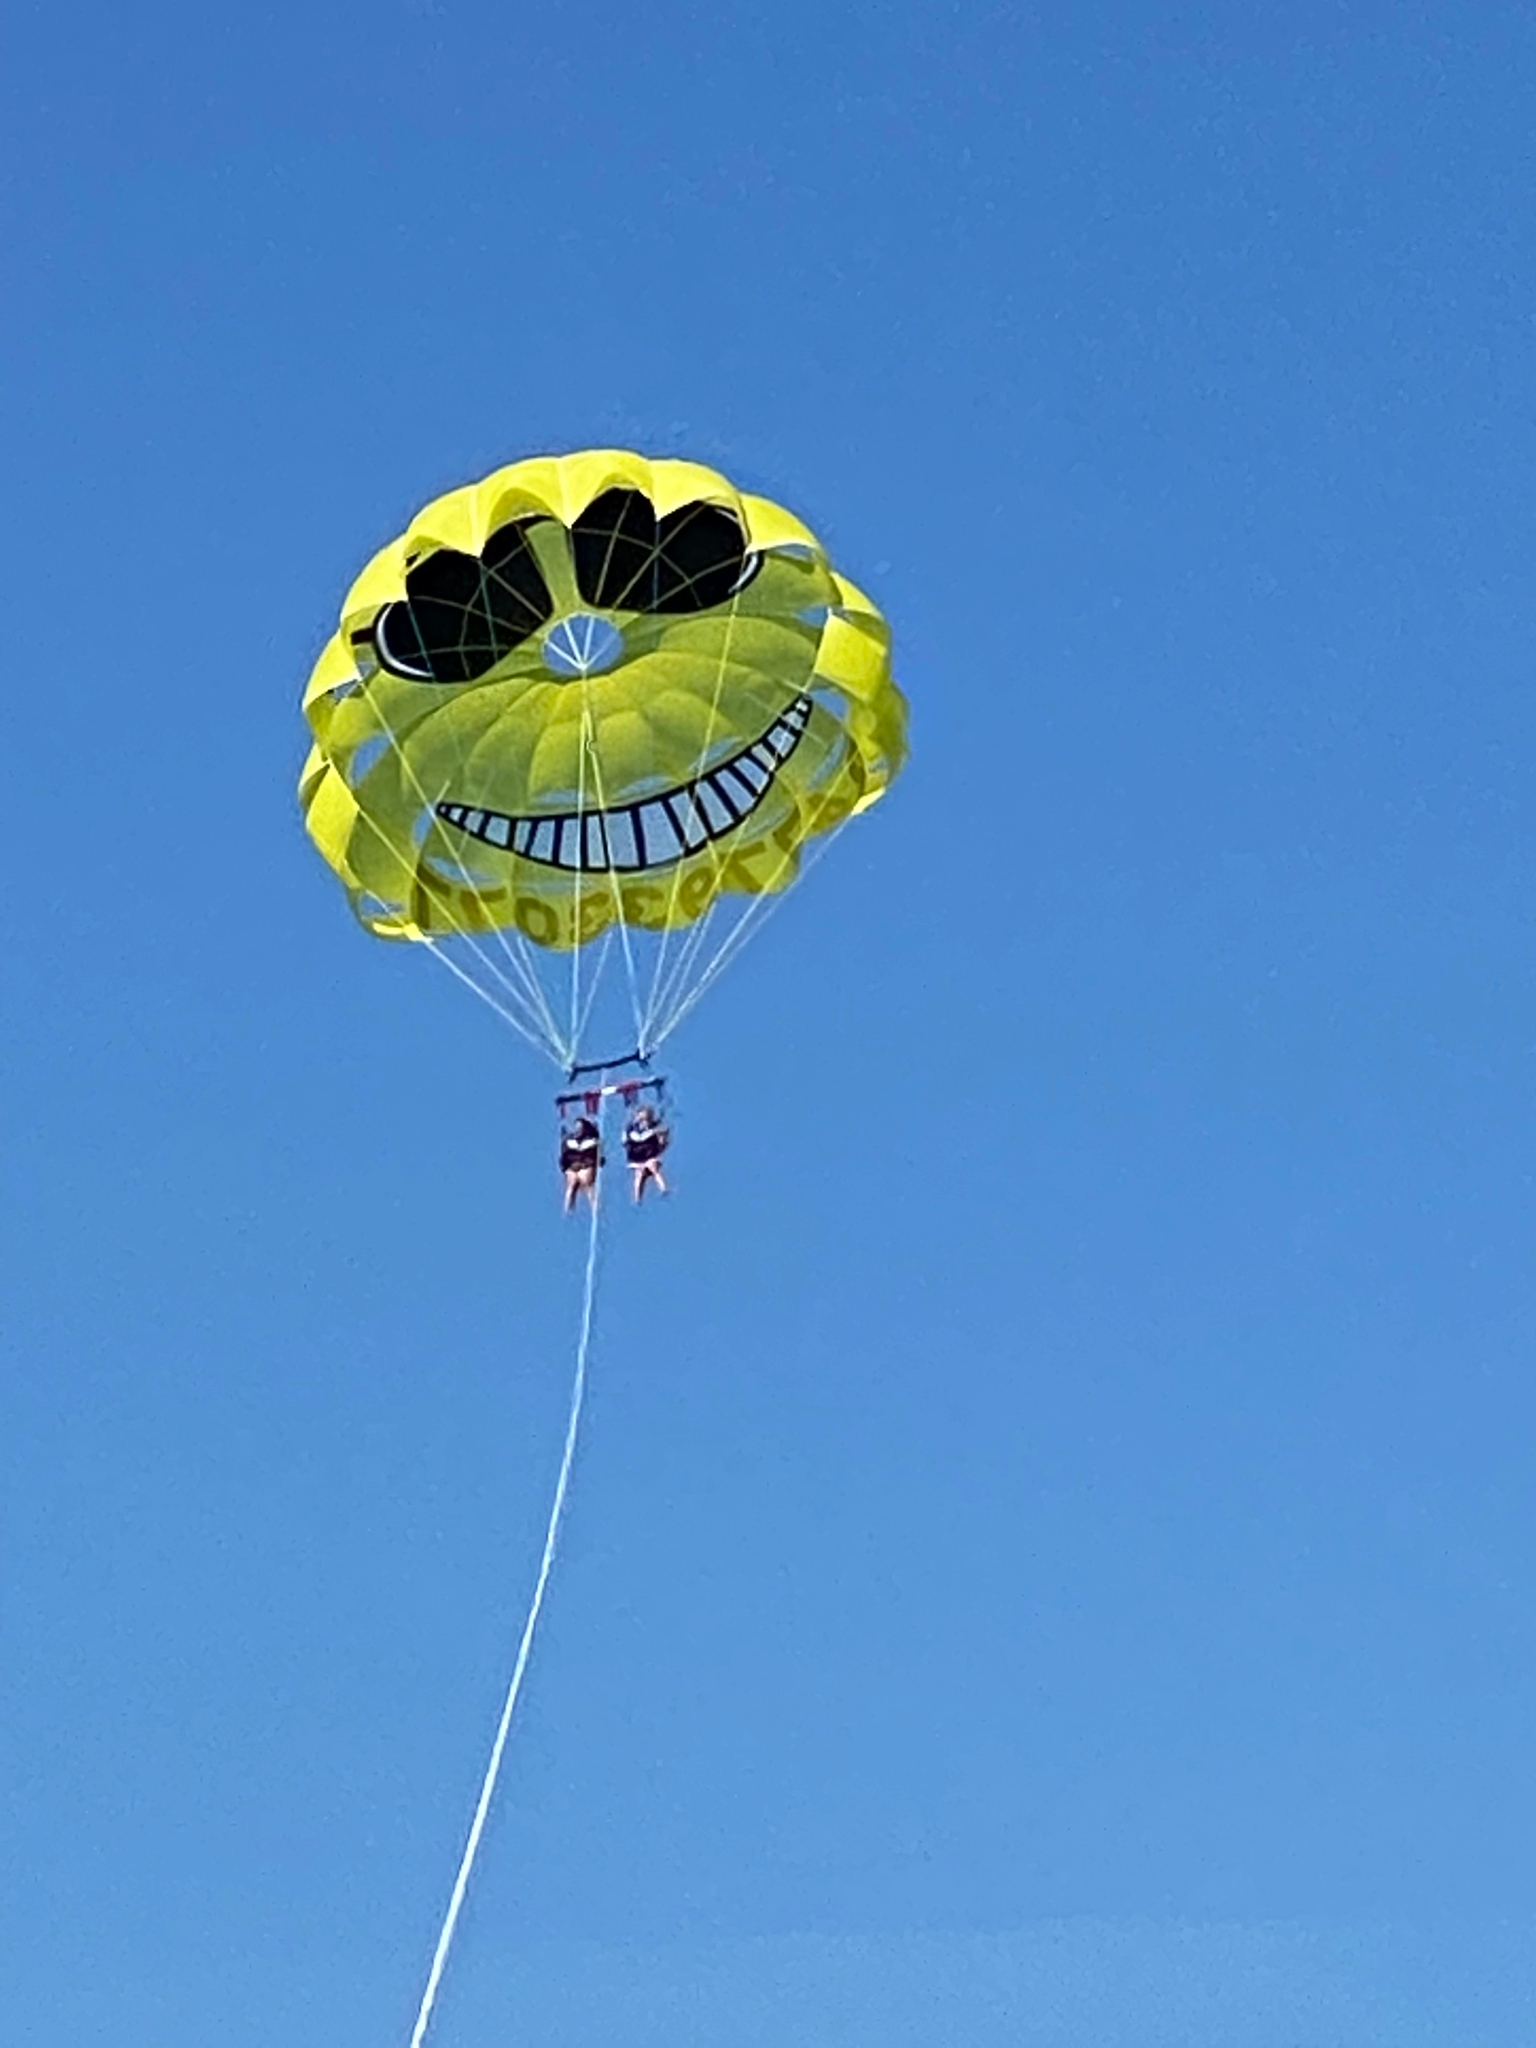 coppia parasailing paracadute ascensionale riviera conero gita in barca ancona marina dorica esperienza volo costa marche brividi 